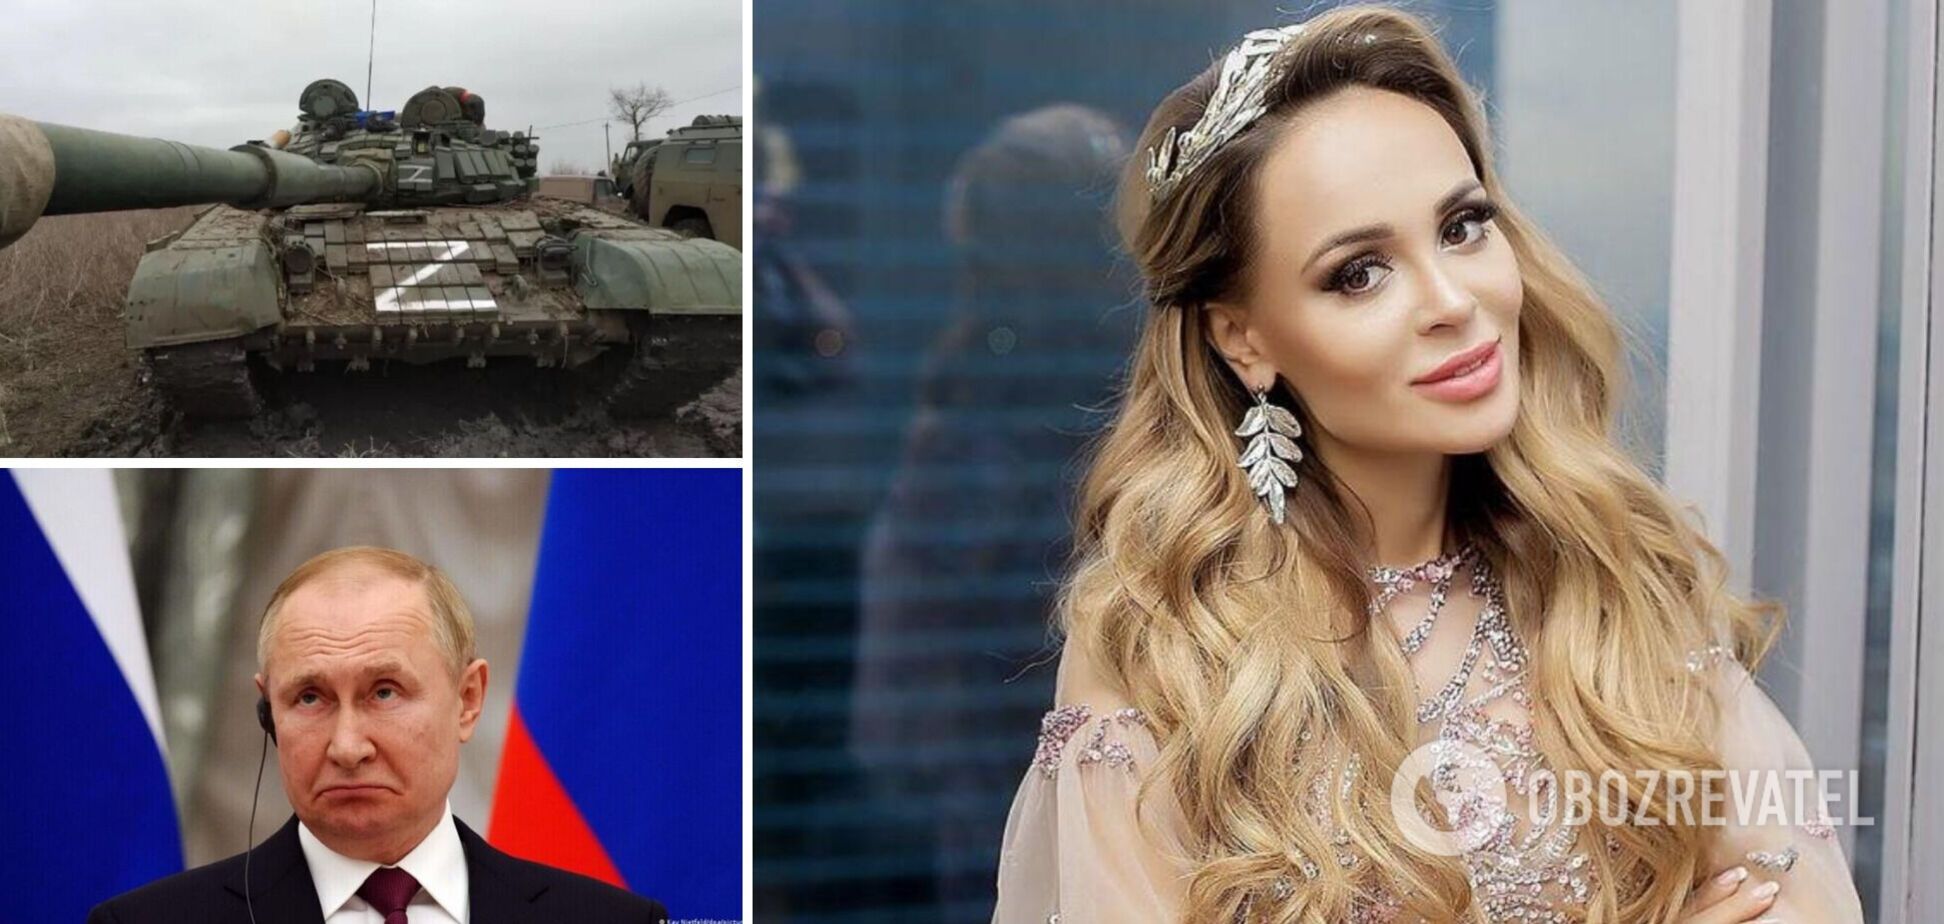 Російська співачка розказала про проблеми з житлом в Іспанії через агресію Путіна і зізналася, що боїться 'пришестя окупантів'